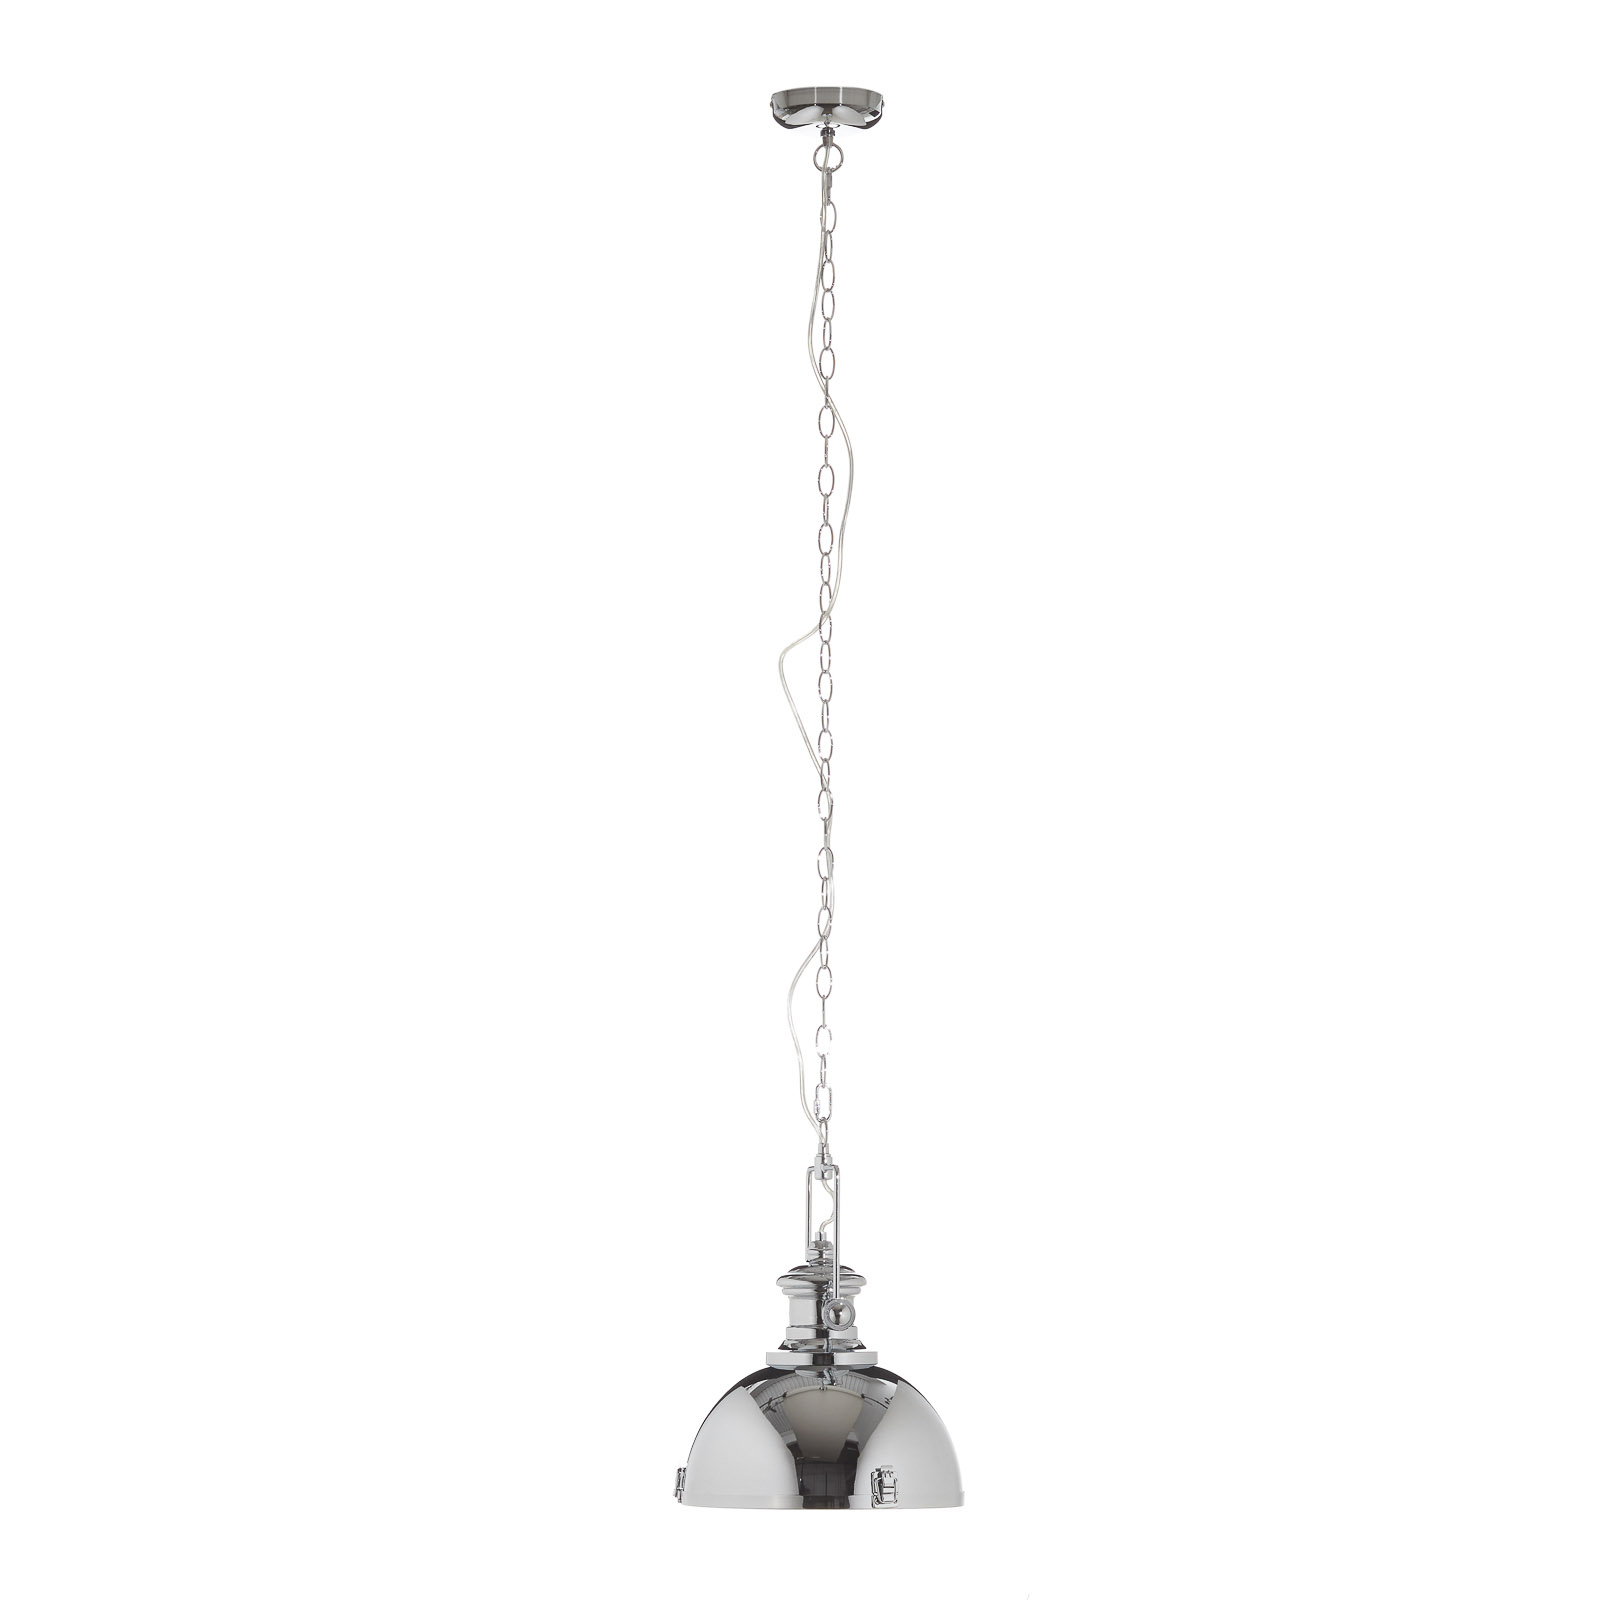 Lámpara colgante de metal, diseño industrial, color cromo